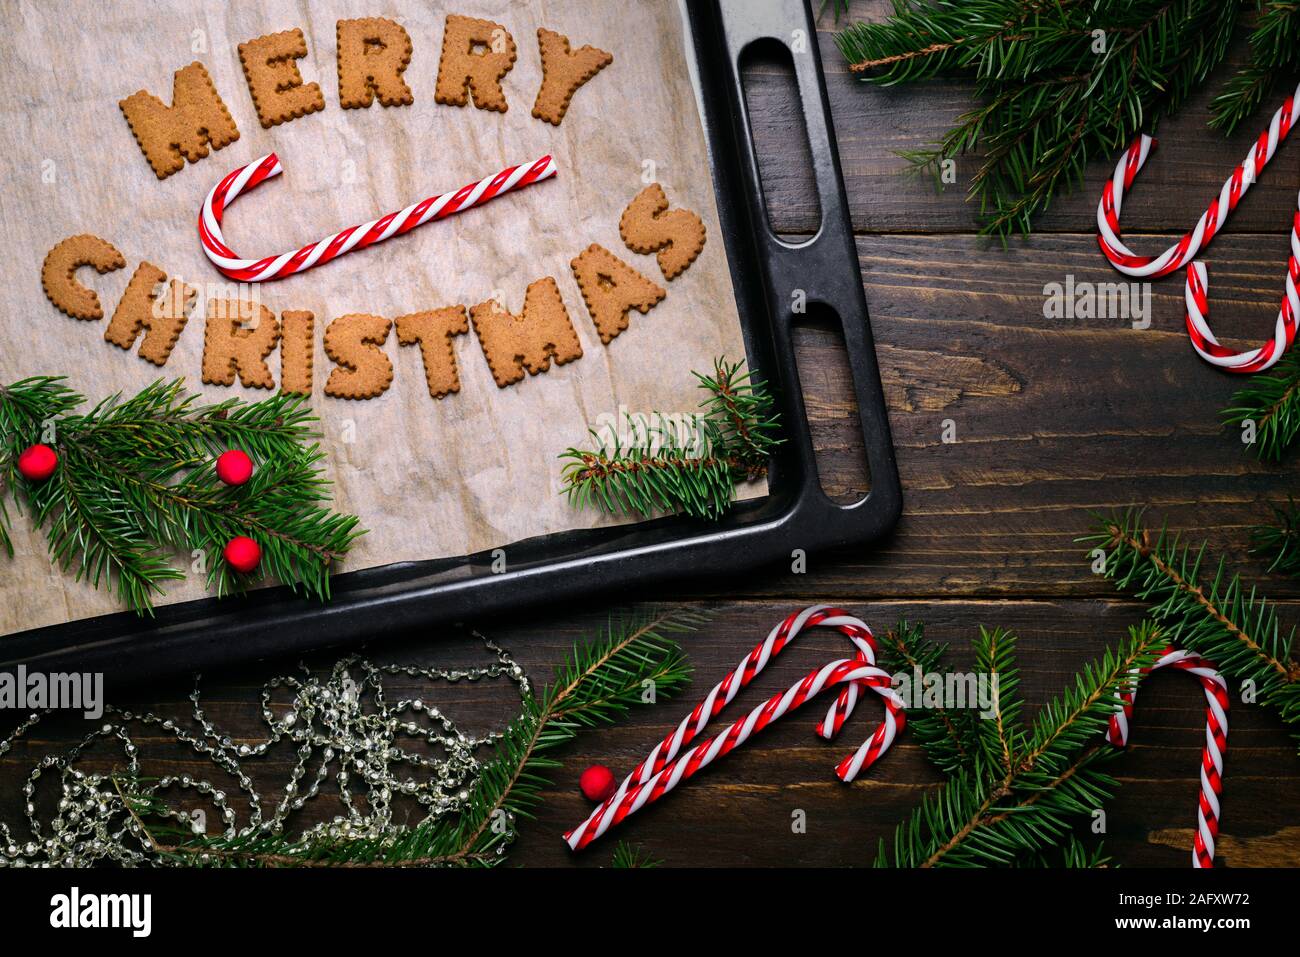 Wörter Frohe Weihnachten aus Cookies auf backblech Holztisch und Dekorationen Stockfoto